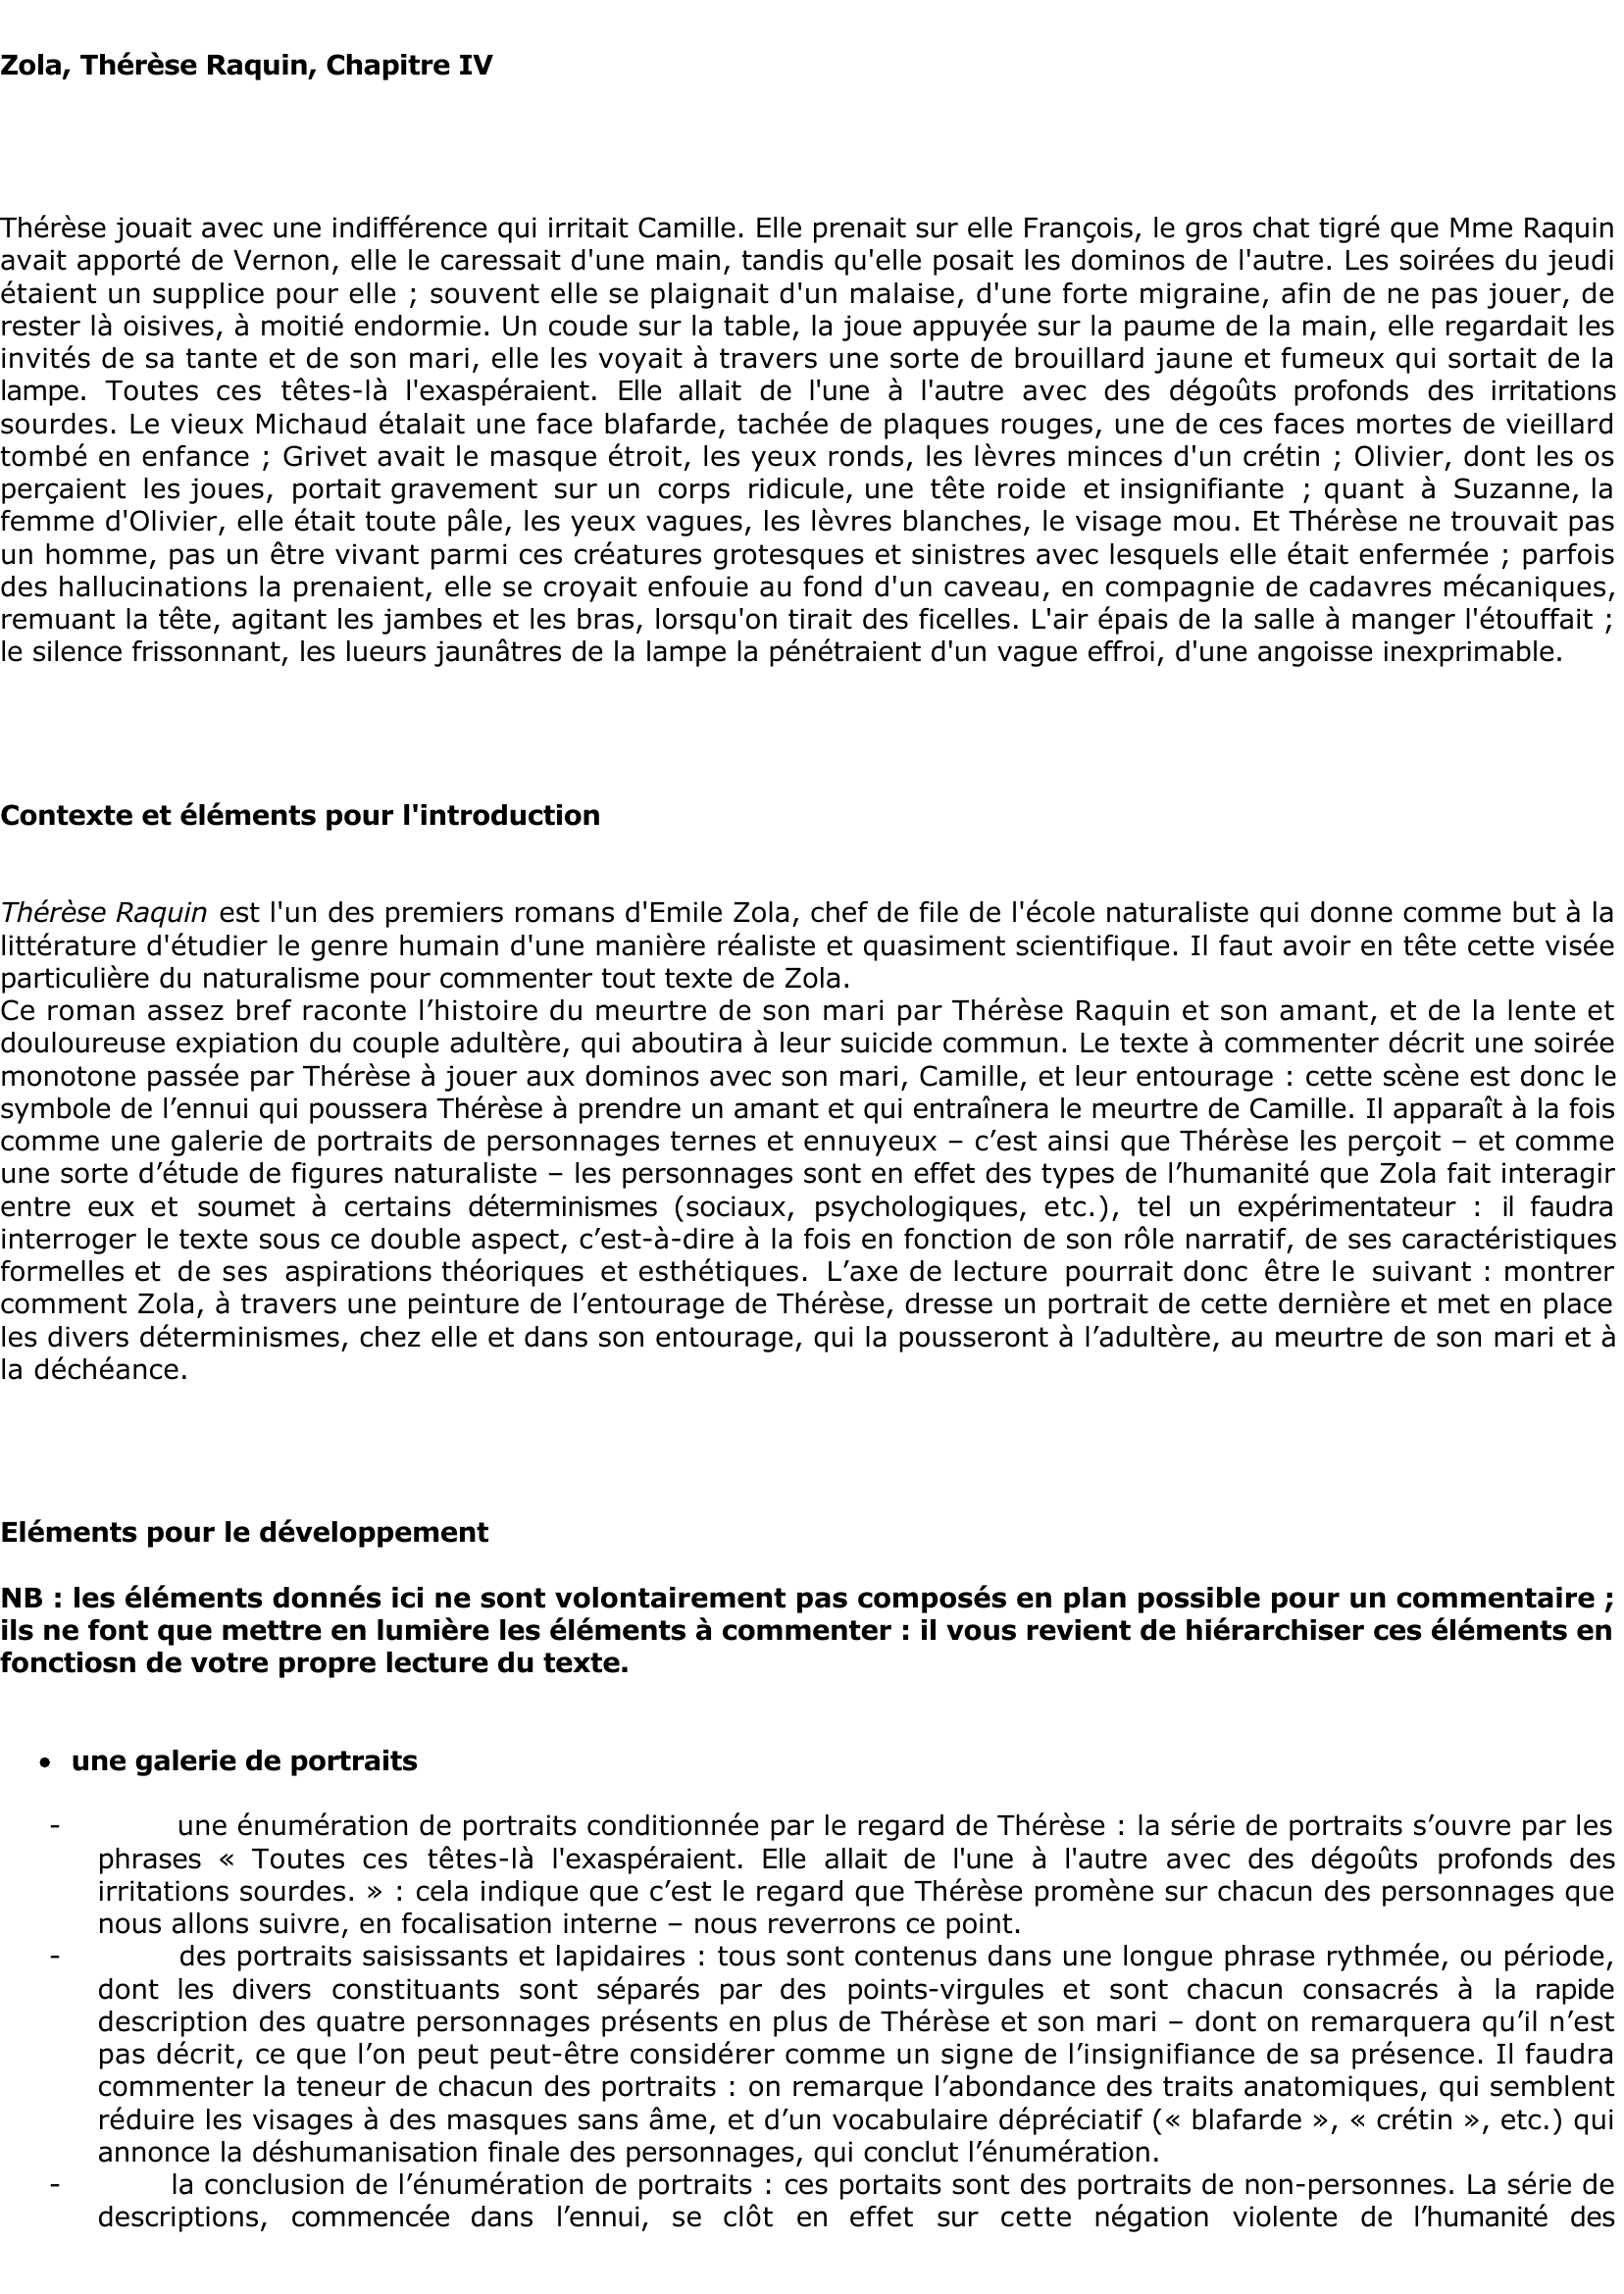 Prévisualisation du document Zola, Thérèse Raquin, Chapitre IV